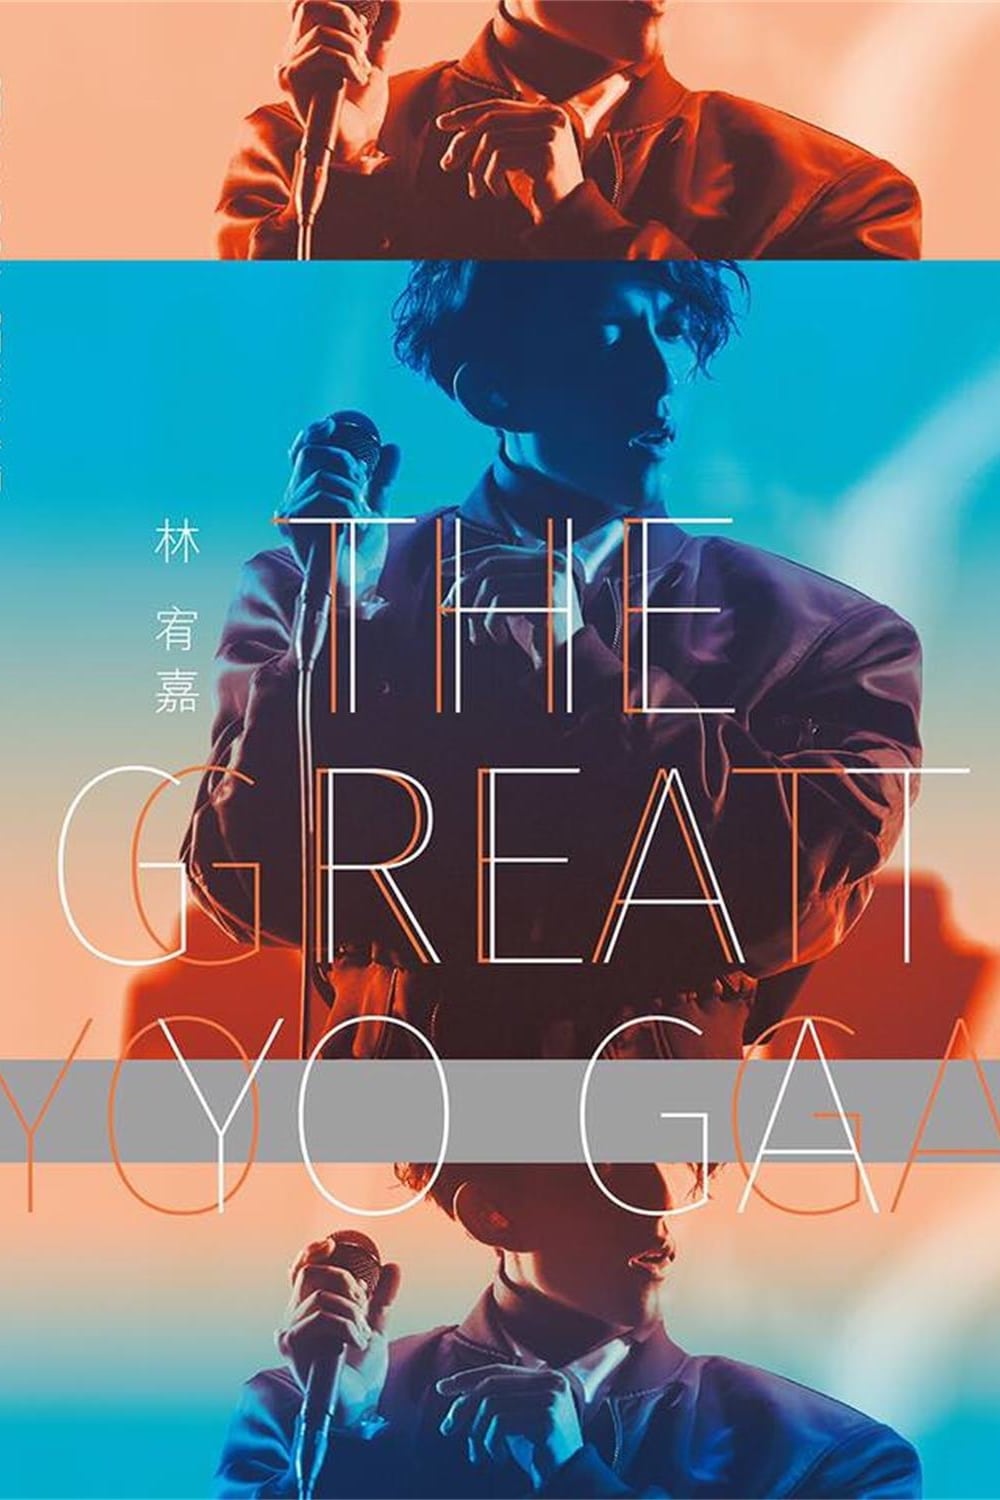 林宥嘉『The Great Yoga 2017 』世界巡回演唱会 2017年返航台北小巨蛋